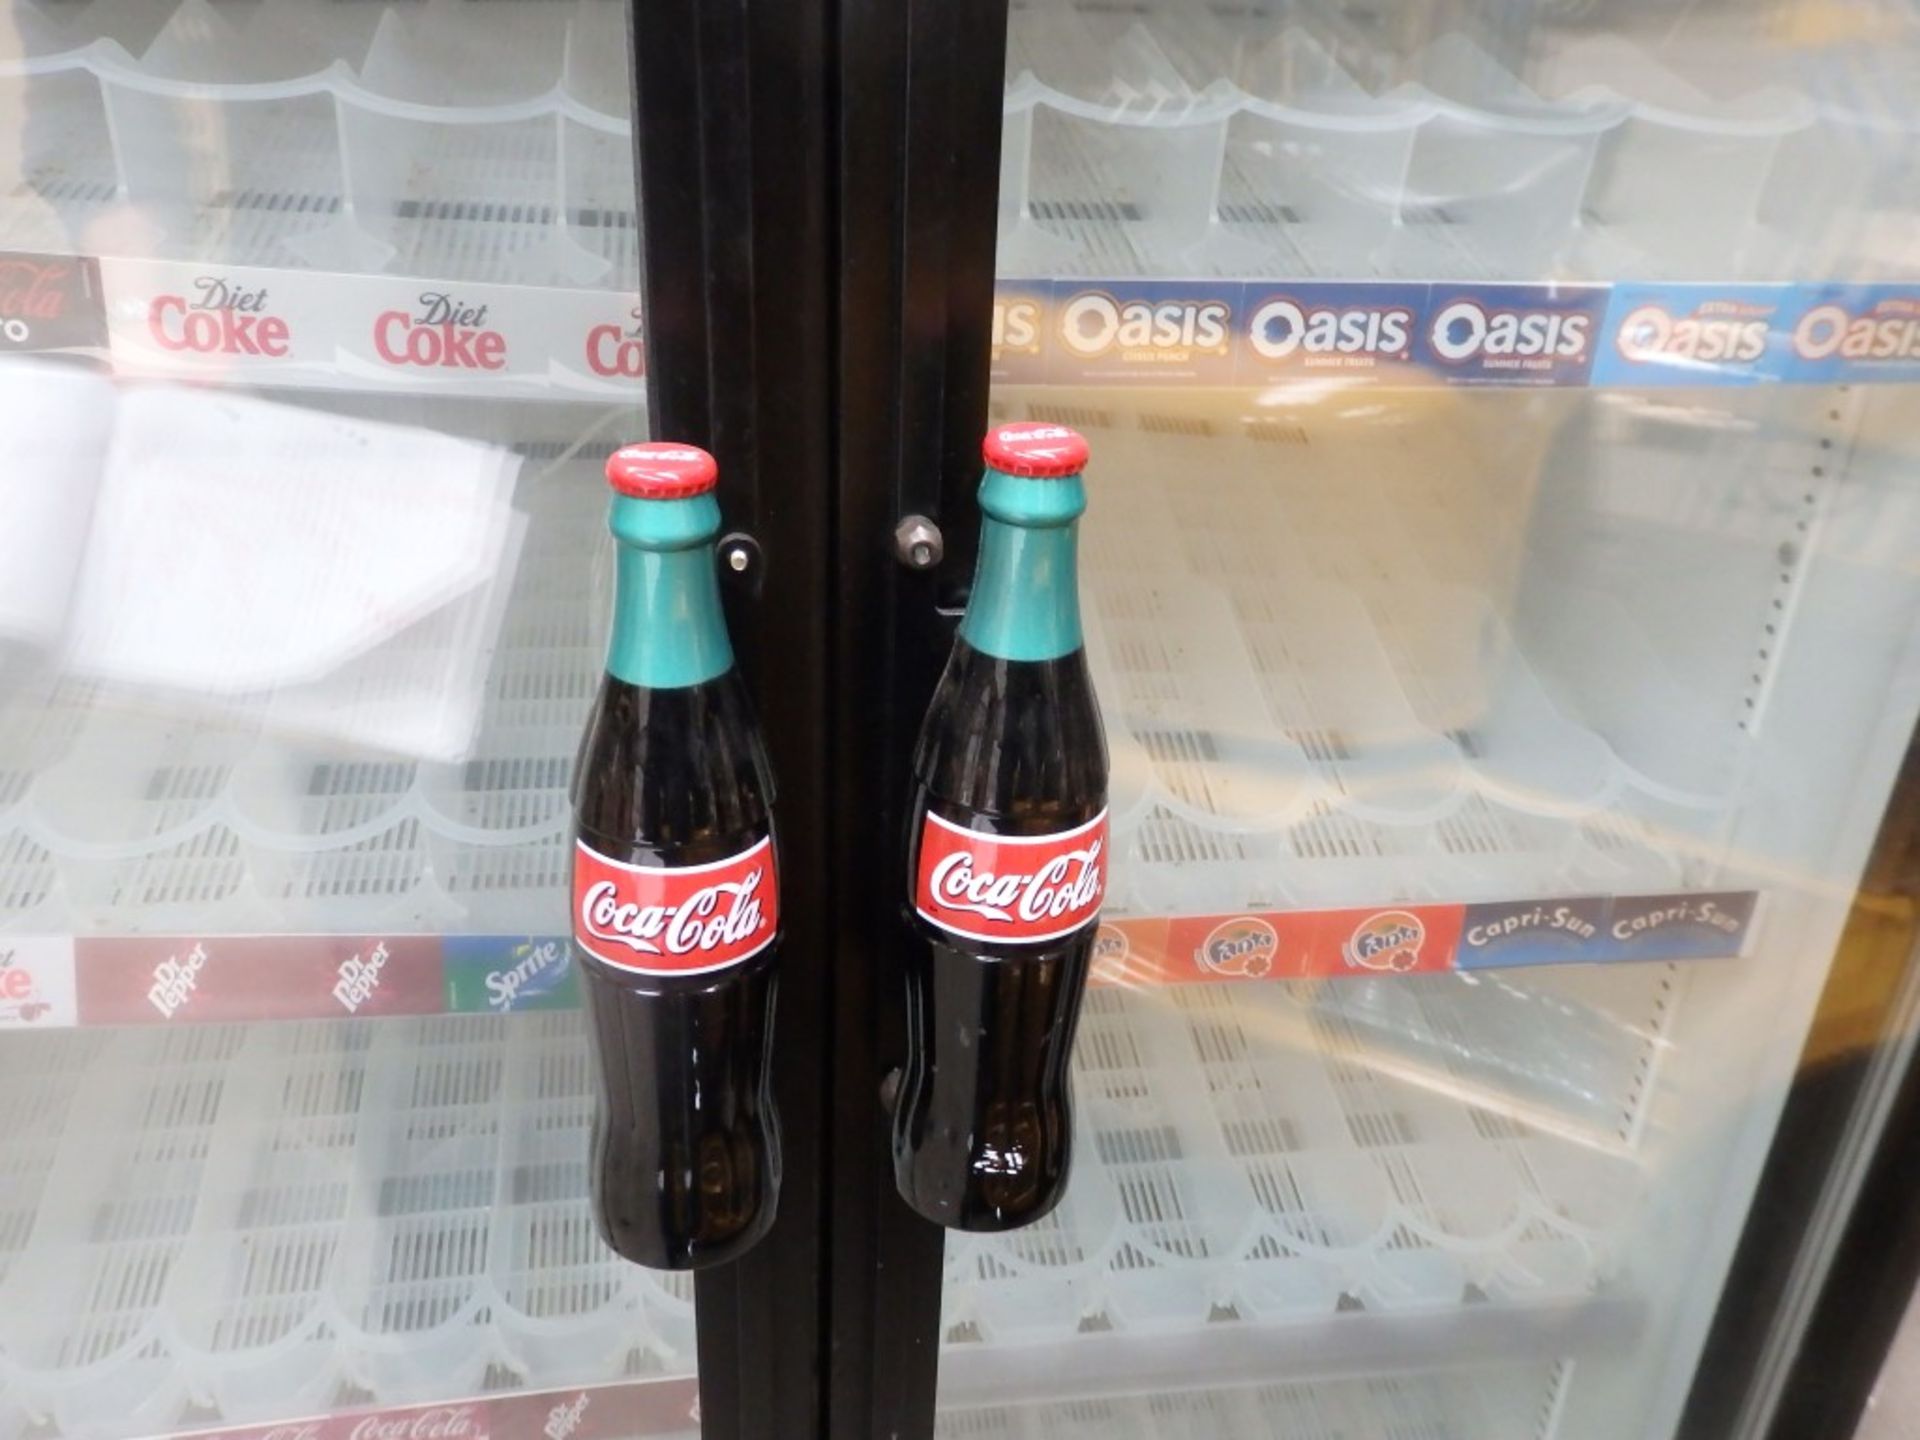 1 x Oversized 2-Door "Coca-Cola" Merchandiser Refrigerator - Model: TRUE GDM 35 - 991Ltr - Glass - Image 5 of 9